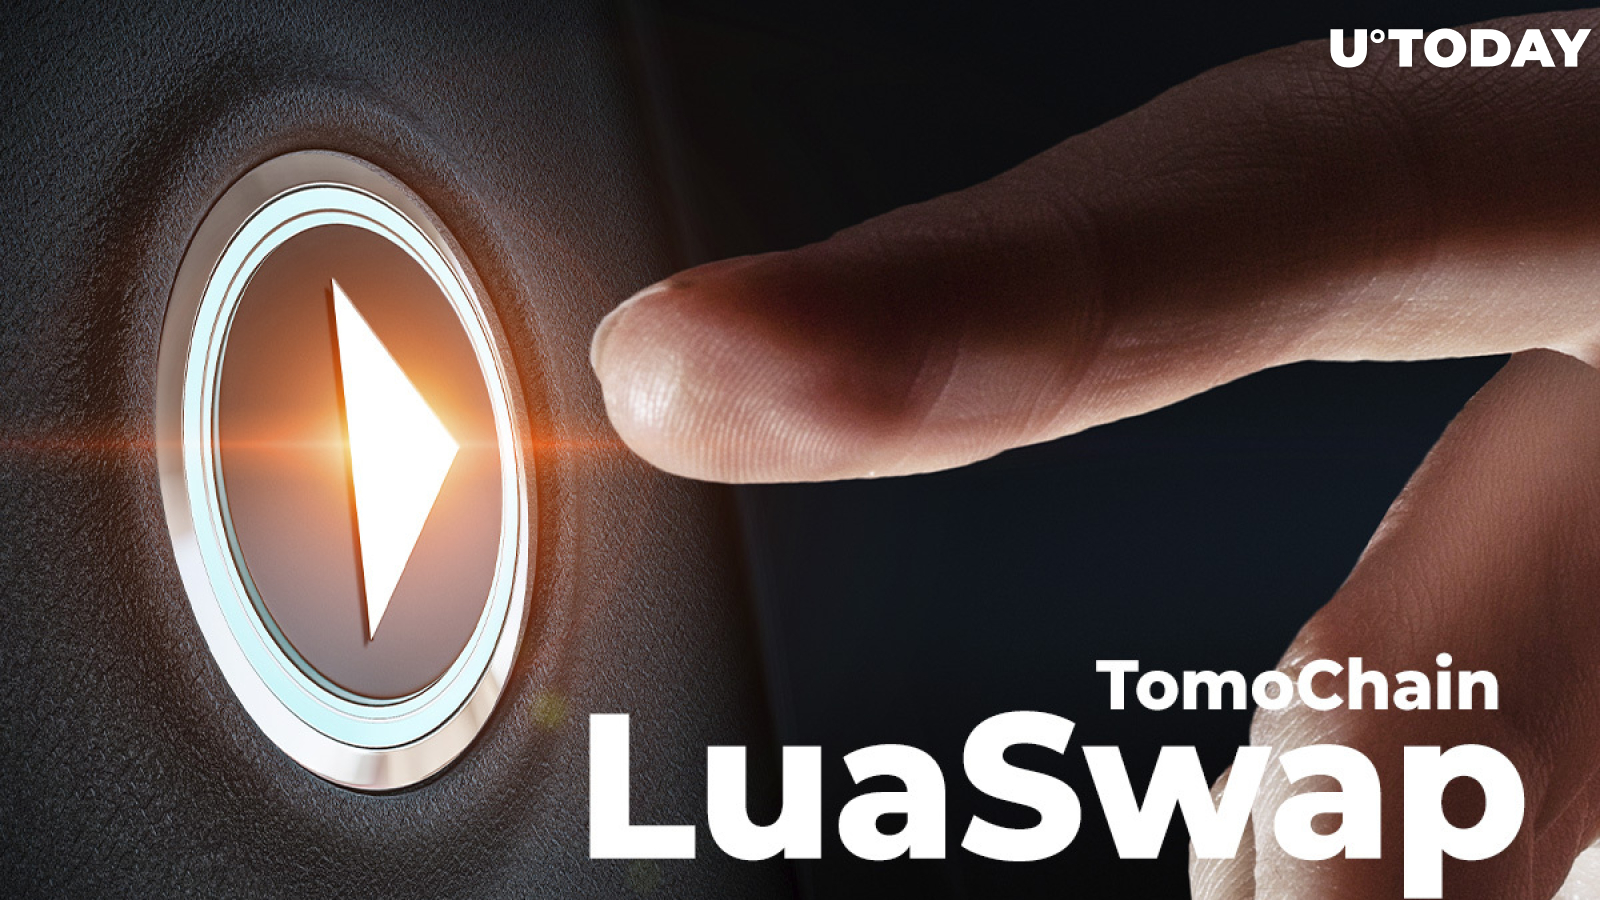 LuaSwap (LUA) Multi-Chain Liquidity Protocol Goes Live on TomoChain (TOMO)